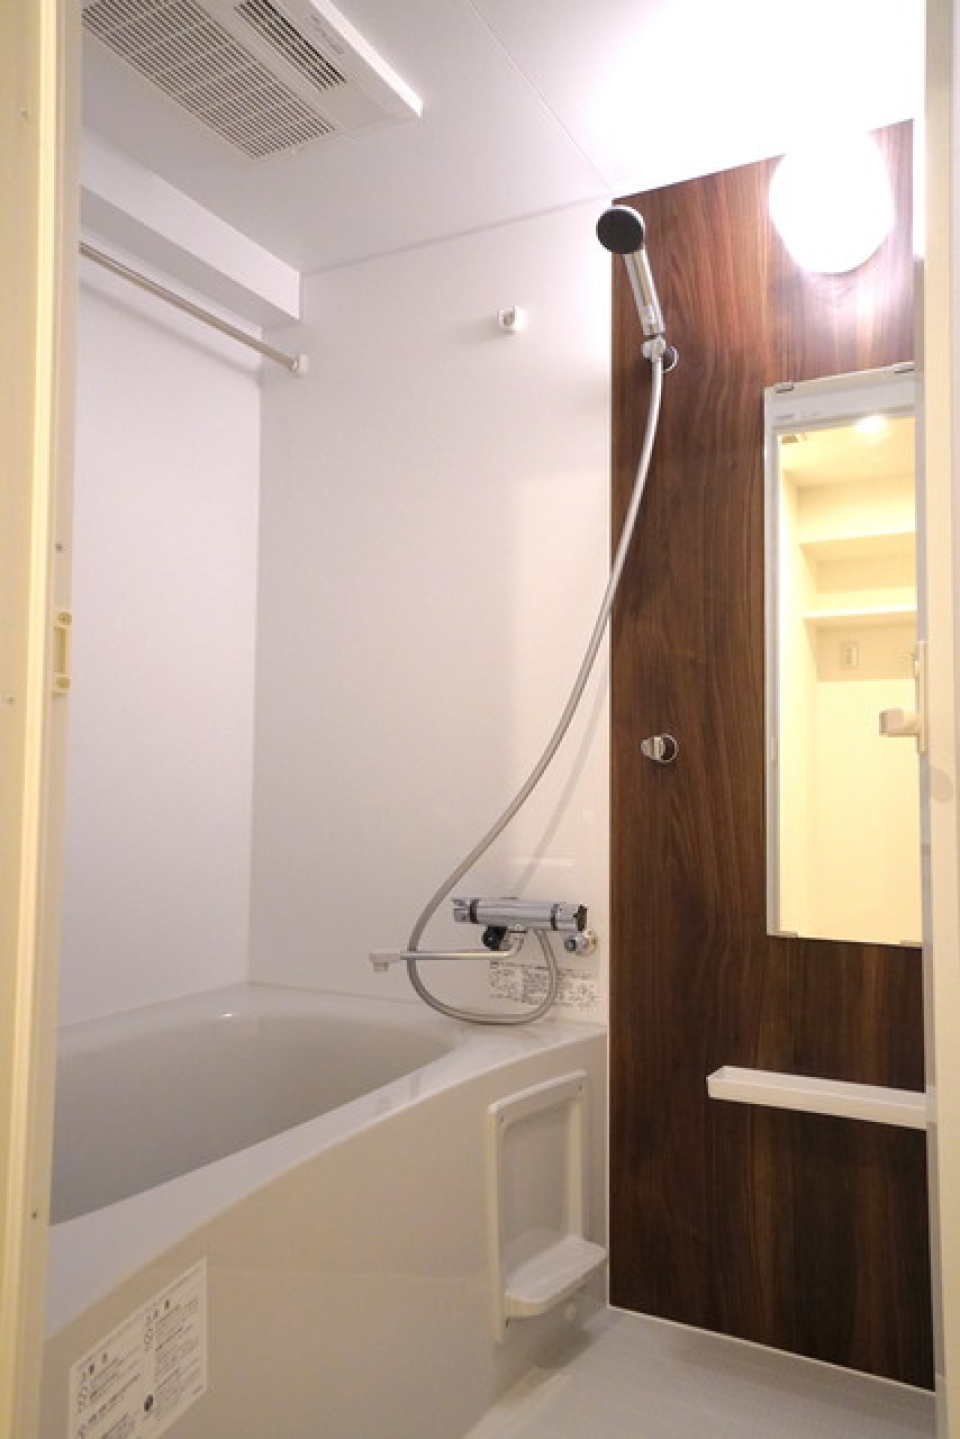 こちらも落ち着いたパネルを使用している浴室です。※写真は同タイプ住戸です。